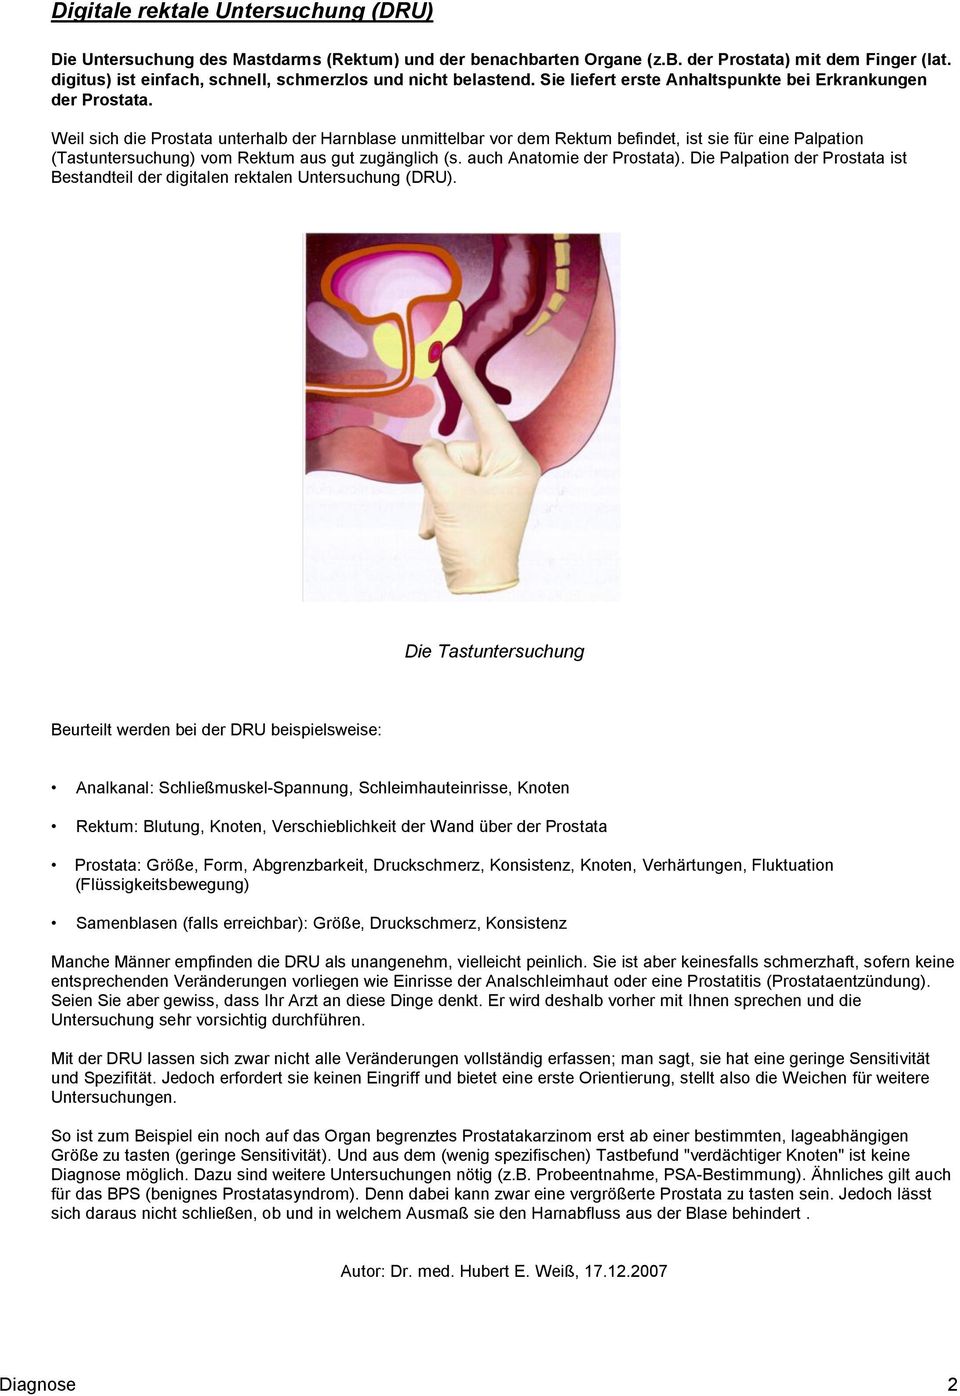 Weil sich die Prostata unterhalb der Harnblase unmittelbar vor dem Rektum befindet, ist sie für eine Palpation (Tastuntersuchung) vom Rektum aus gut zugänglich (s. auch Anatomie der Prostata).